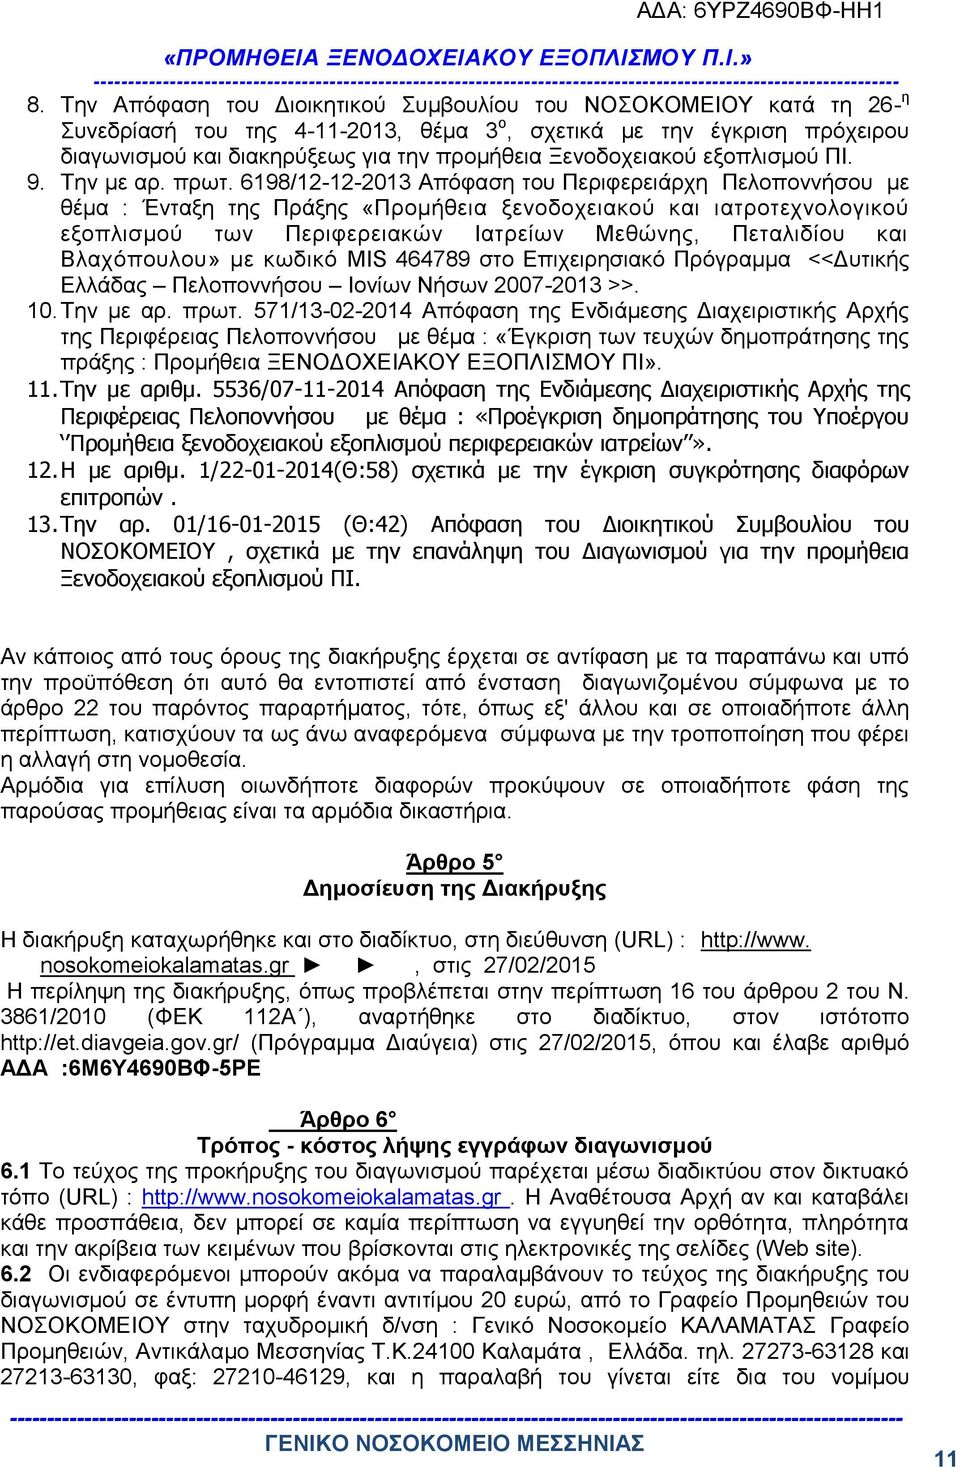 6198/12-12-2013 Απόφαση του Περιφερειάρχη Πελοποννήσου με θέμα : Ένταξη της Πράξης «Προμήθεια ξενοδοχειακού και ιατροτεχνολογικού εξοπλισμού των Περιφερειακών Ιατρείων Μεθώνης, Πεταλιδίου και